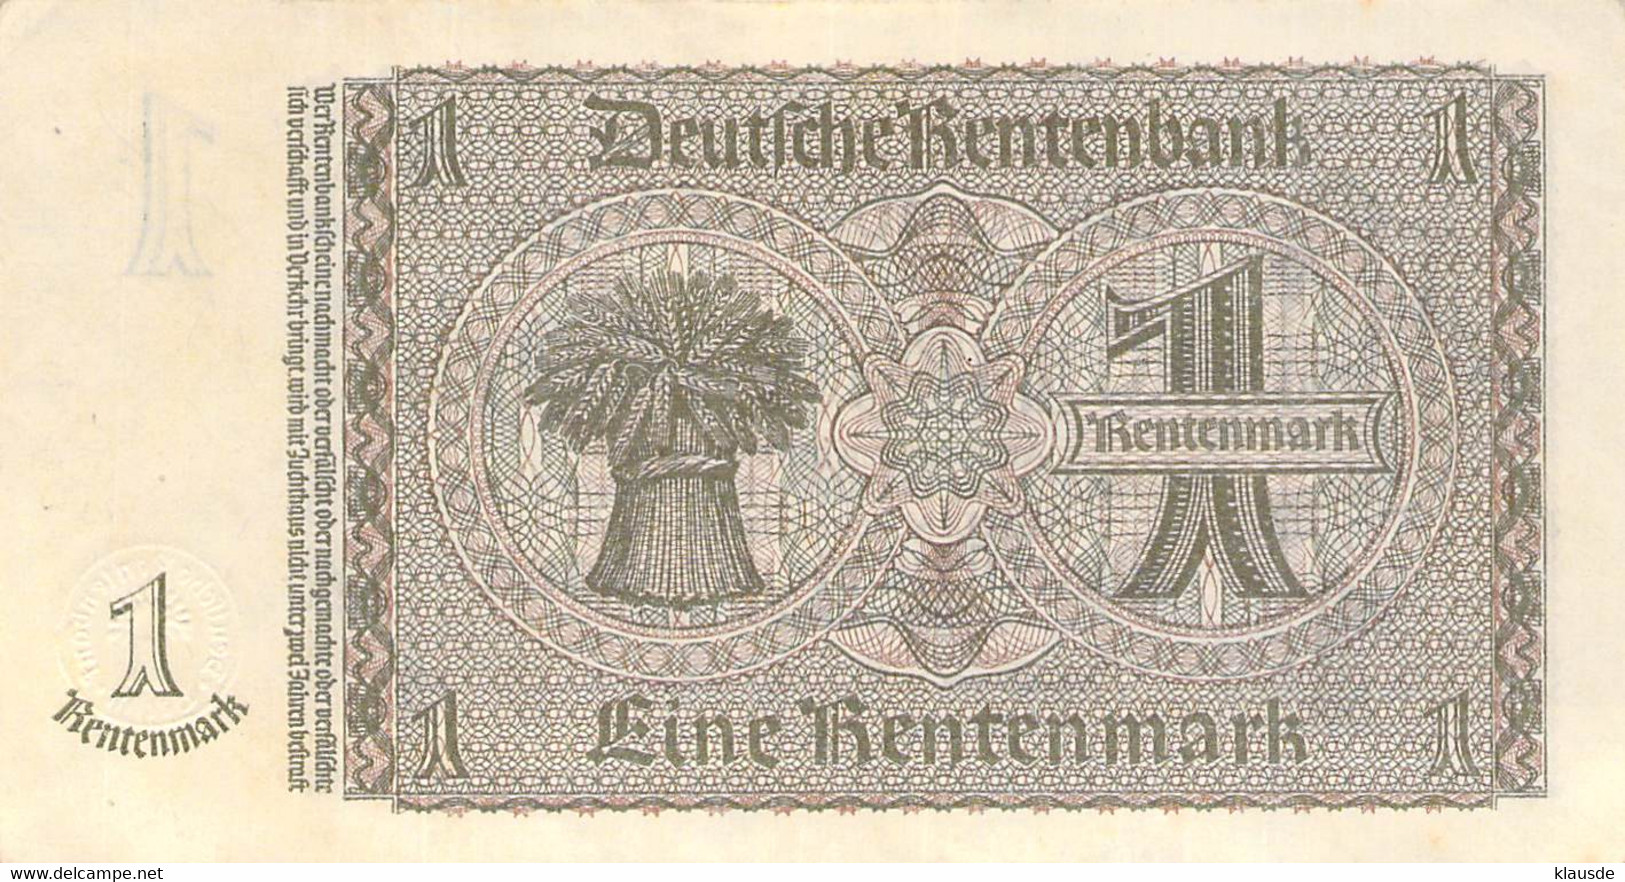 1 Rentenmark Deutsche Rentenbank 1937 UNC (I) - 1 Rentenmark